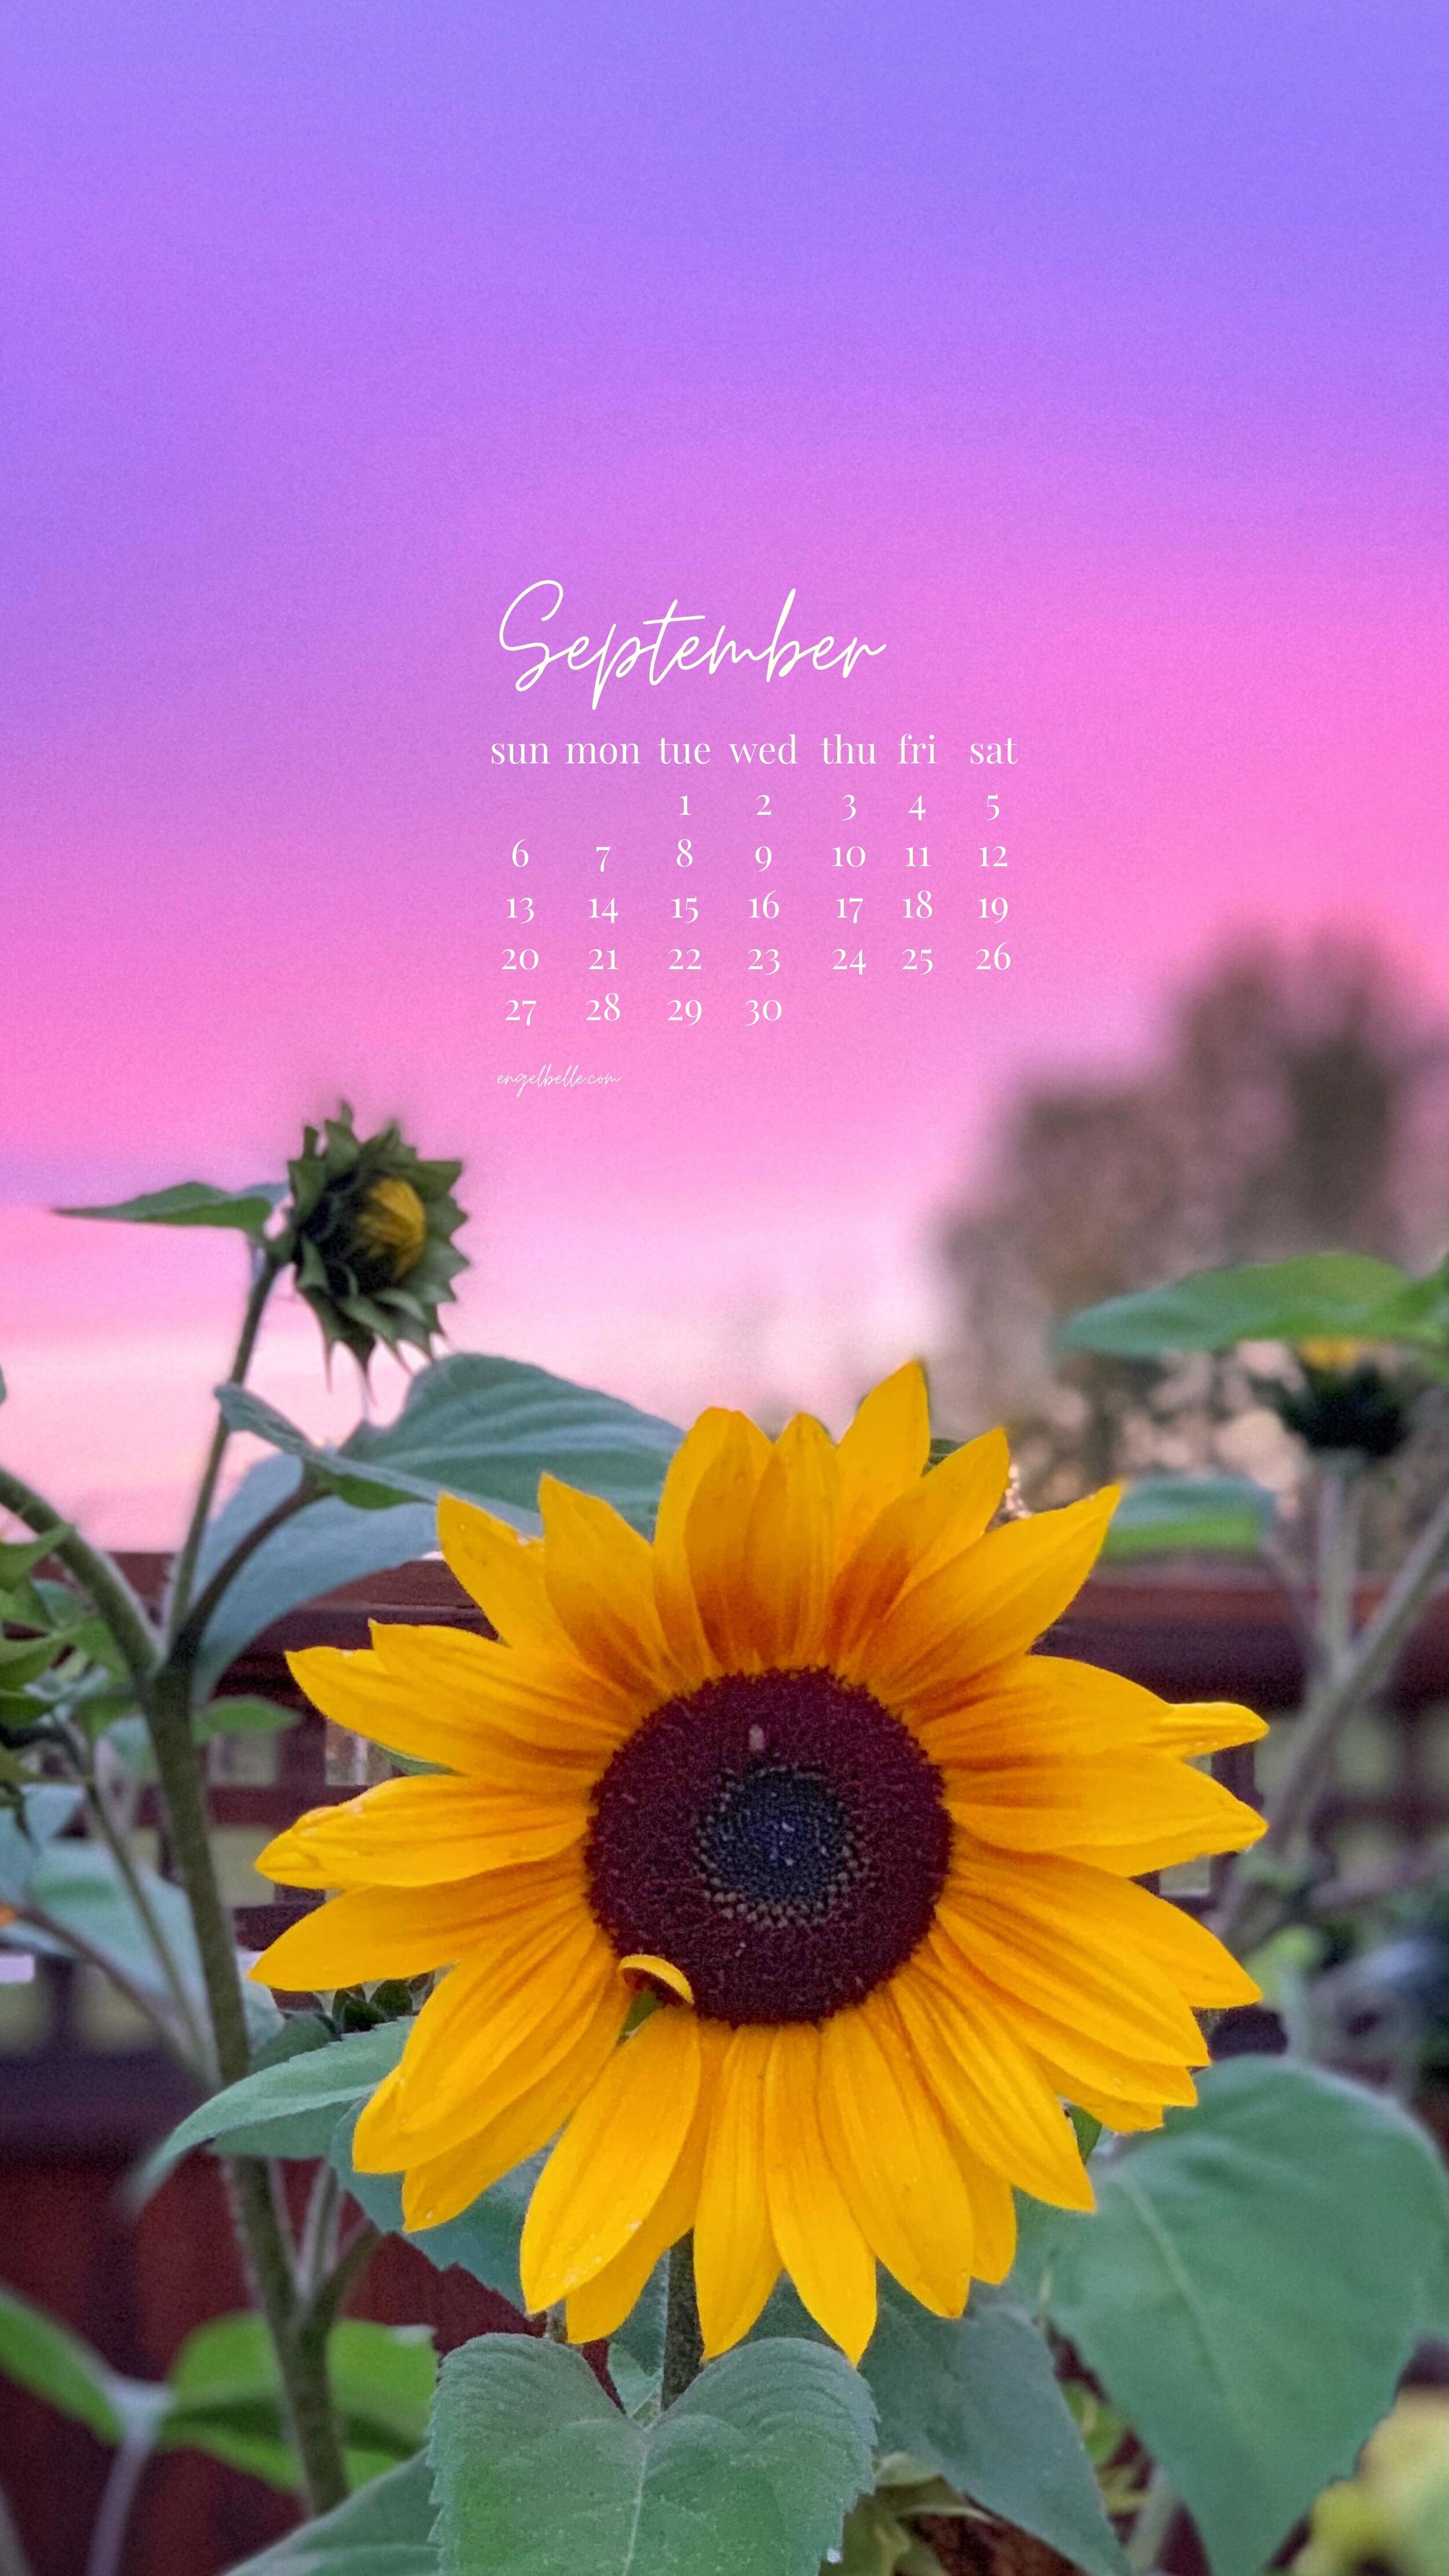 Engelbelle September Sunnies Sunset Phone Wallpaper.com.jpg